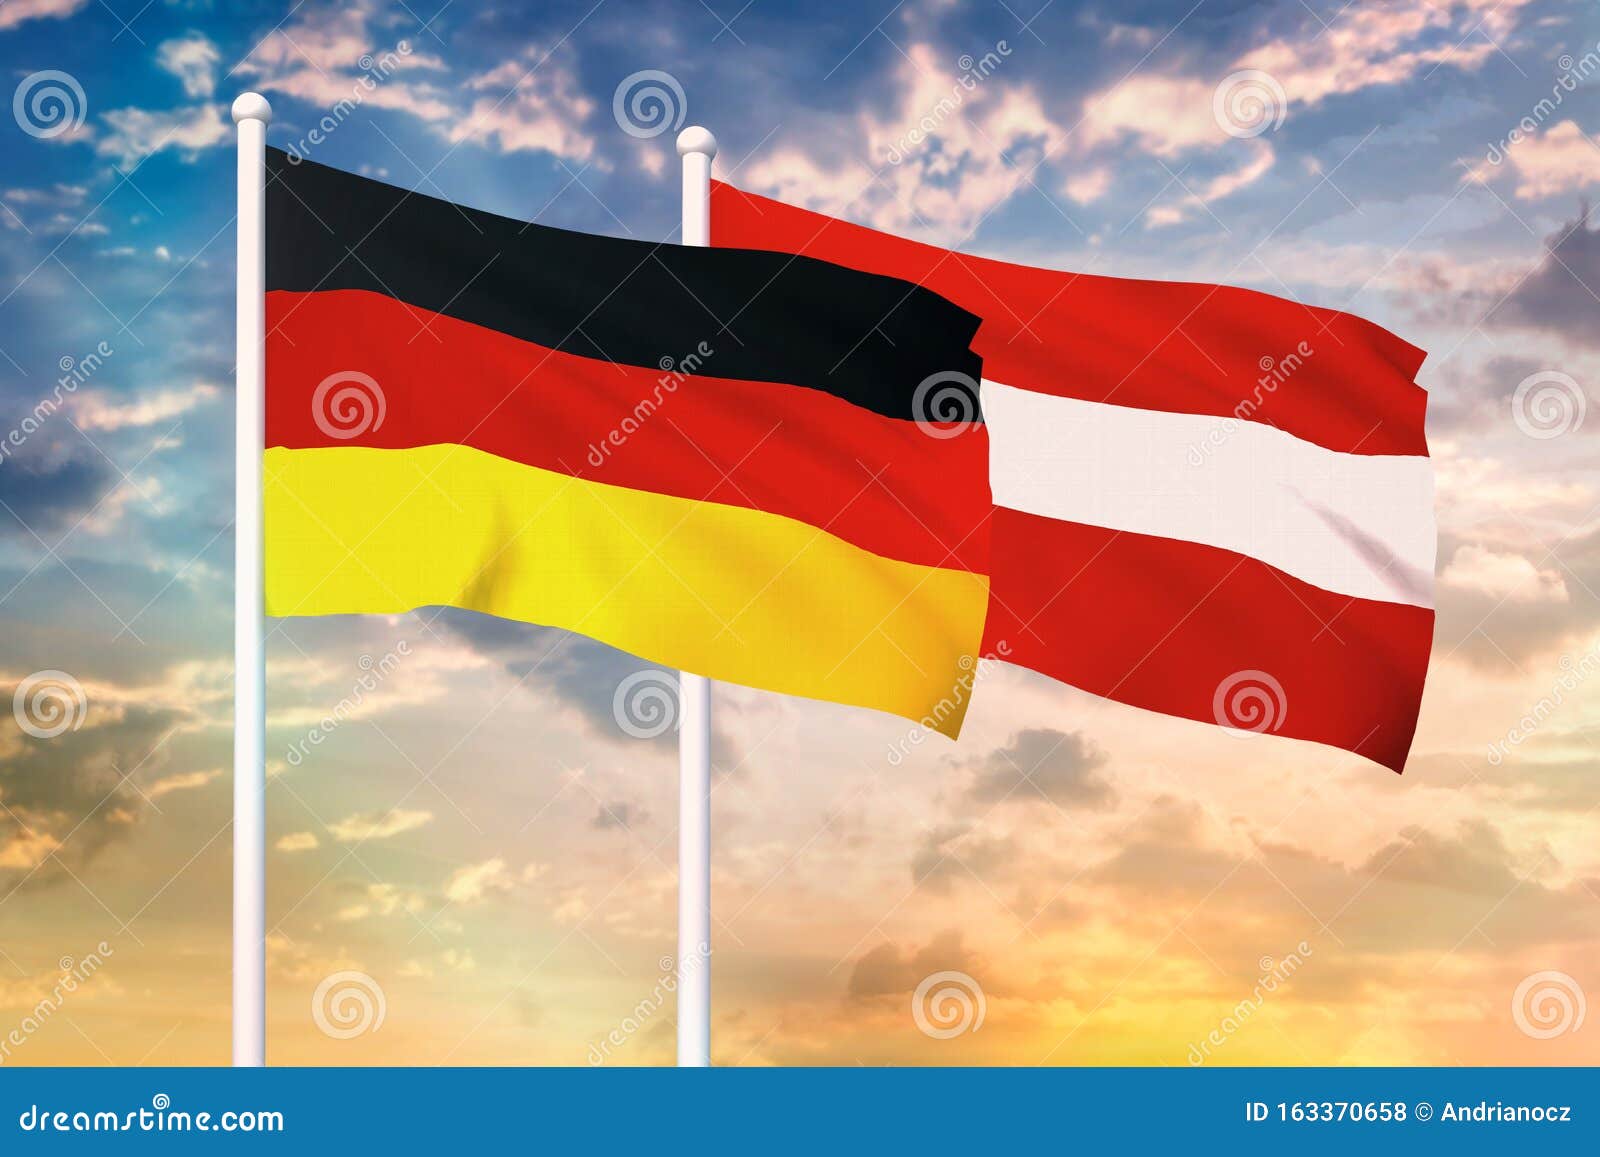 Германия австрия отношения. Флаг Германии и Австрии. Австрия и Германия. Австрийский и немецкий флаги. Отношения Австрии и Германии.